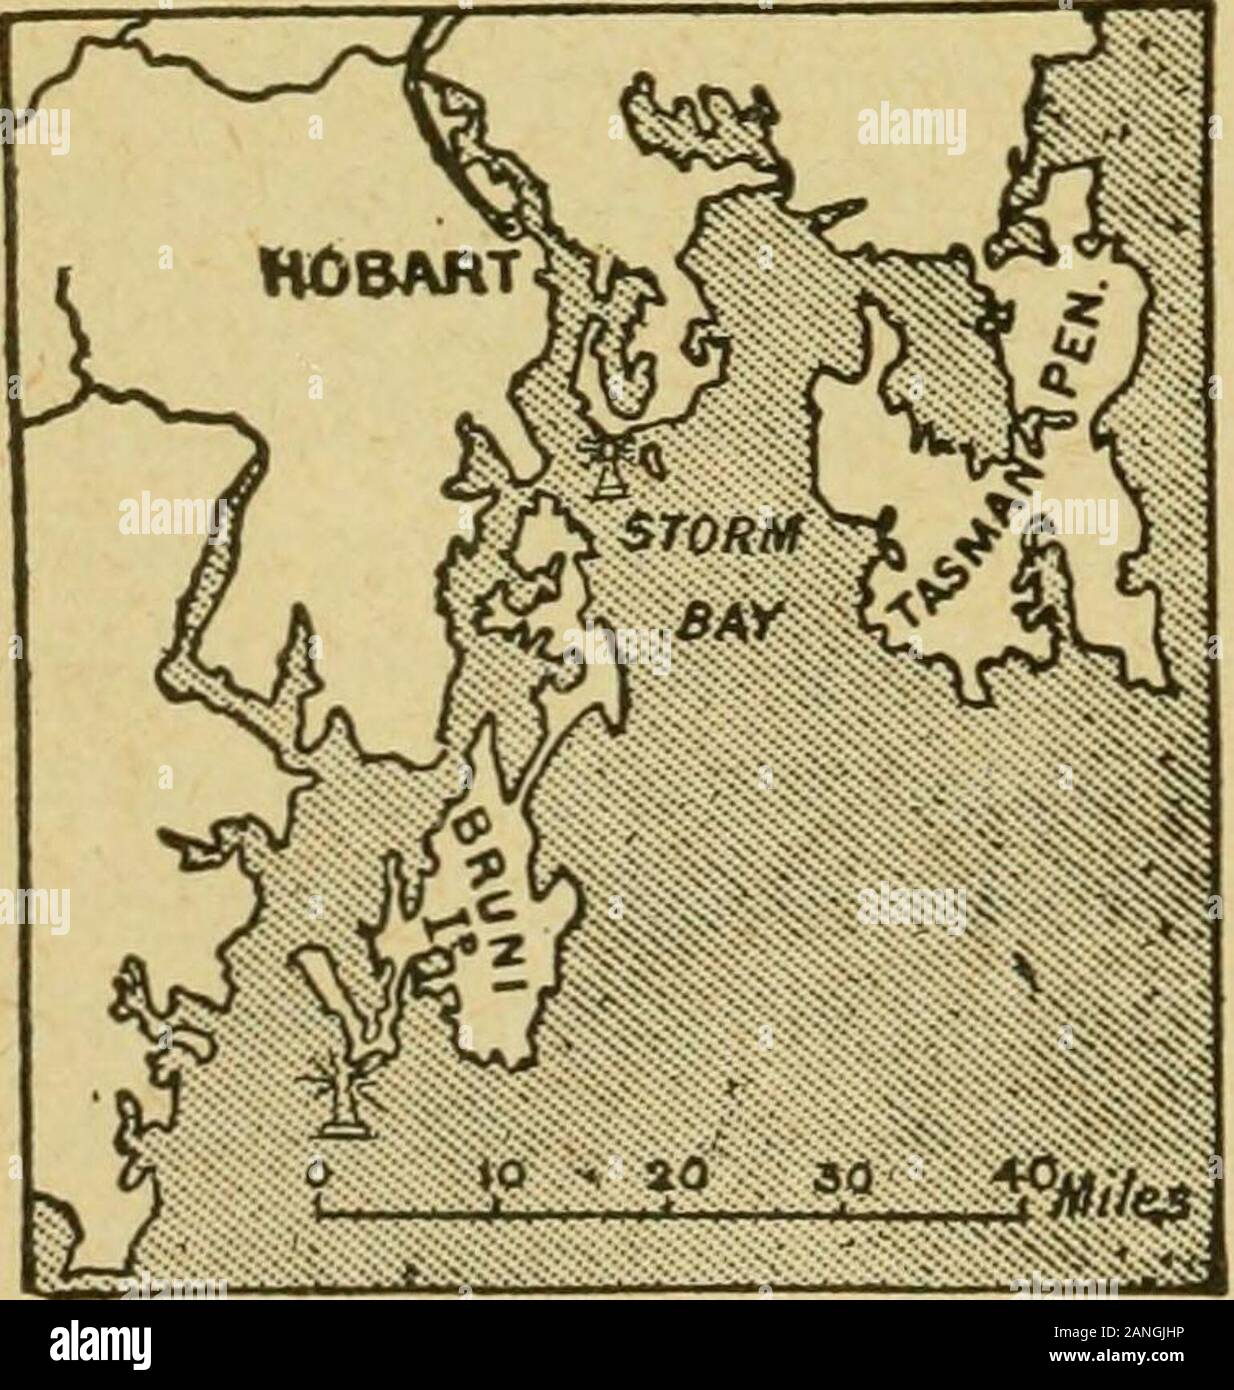 La géographie internationale . , Est une île séparée de Victoria par le détroit de Bass (environ 140 milles de large), et s'étendant entre les parallèles de 4o|° et 43°^ S. Son salon est à peine inférieure à celle de l'Ecosse, et c'est le plus petit et le plus tempéré de la colonies australiennes. La côte nord de la Tasmanie est confronté le continent dans une courbe concave à partir des deux extrémités de quelles lignes d'îles, les Furneaux group à l'Est et Hunter et King Îles sur l'ouest, s'étendent vers le nord à travers le détroit de Bass, les chaînes comme la suspension d'un coeur-pendentif en forme. Les encoches sur le nord et l'ouest Banque D'Images